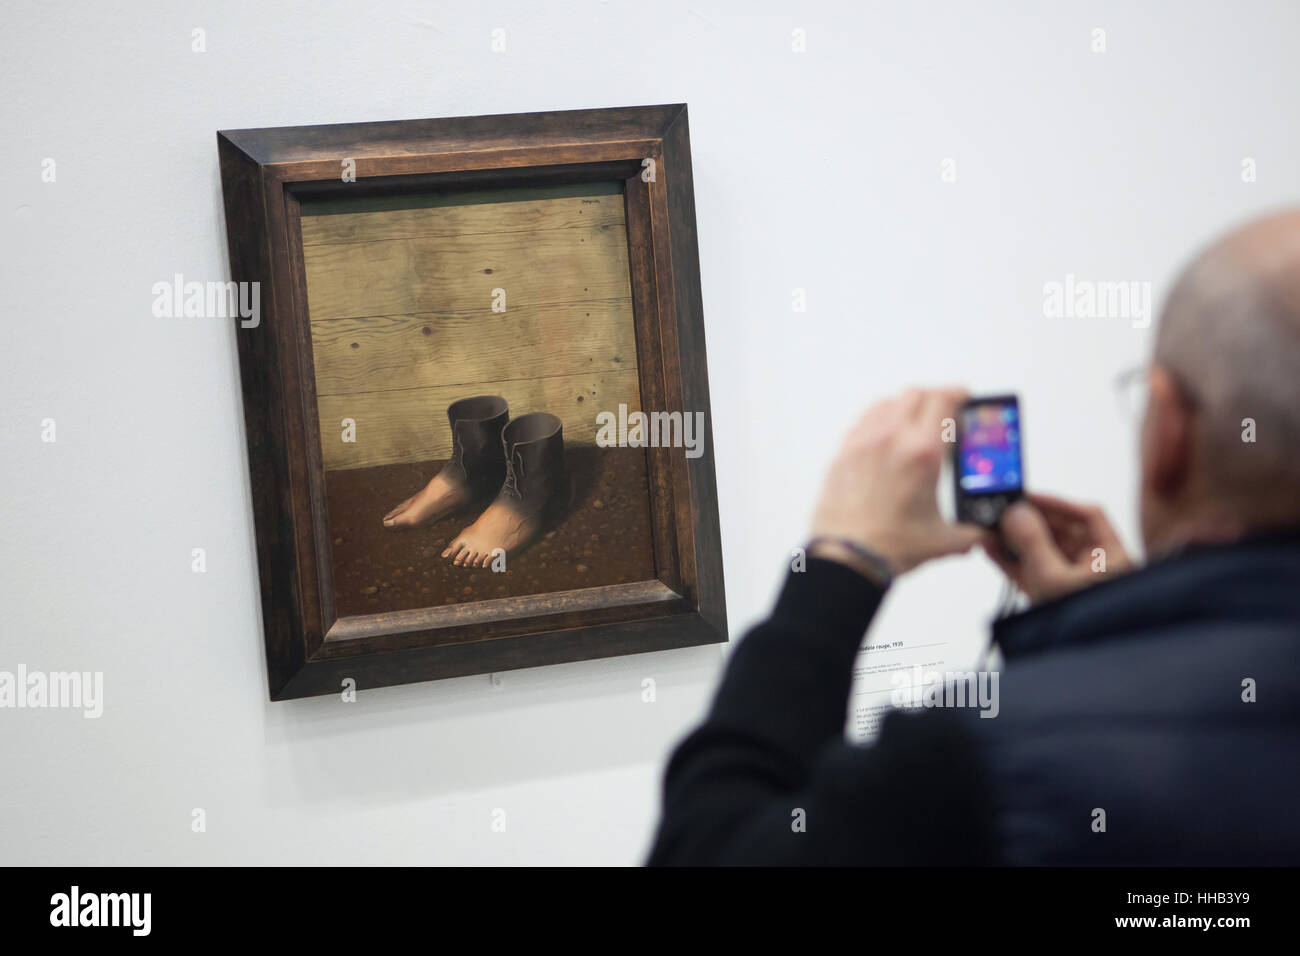 Visiteur utilise son smartphone pour photographier le tableau Le modele Rouge (le modèle Rouge, 1935) par l'artiste surréaliste belge René Magritte affichée à son exposition rétrospective au Centre Pompidou à Paris, France. L'exposition intitulée "René Magritte. La trahison des images' tourne au 23 janvier 2017. Après que la version reformulée de l'exposition sera présentée à la Schirn Kunsthalle Frankfurt am Main, Allemagne, du 10 février au 5 juin 2017. Banque D'Images